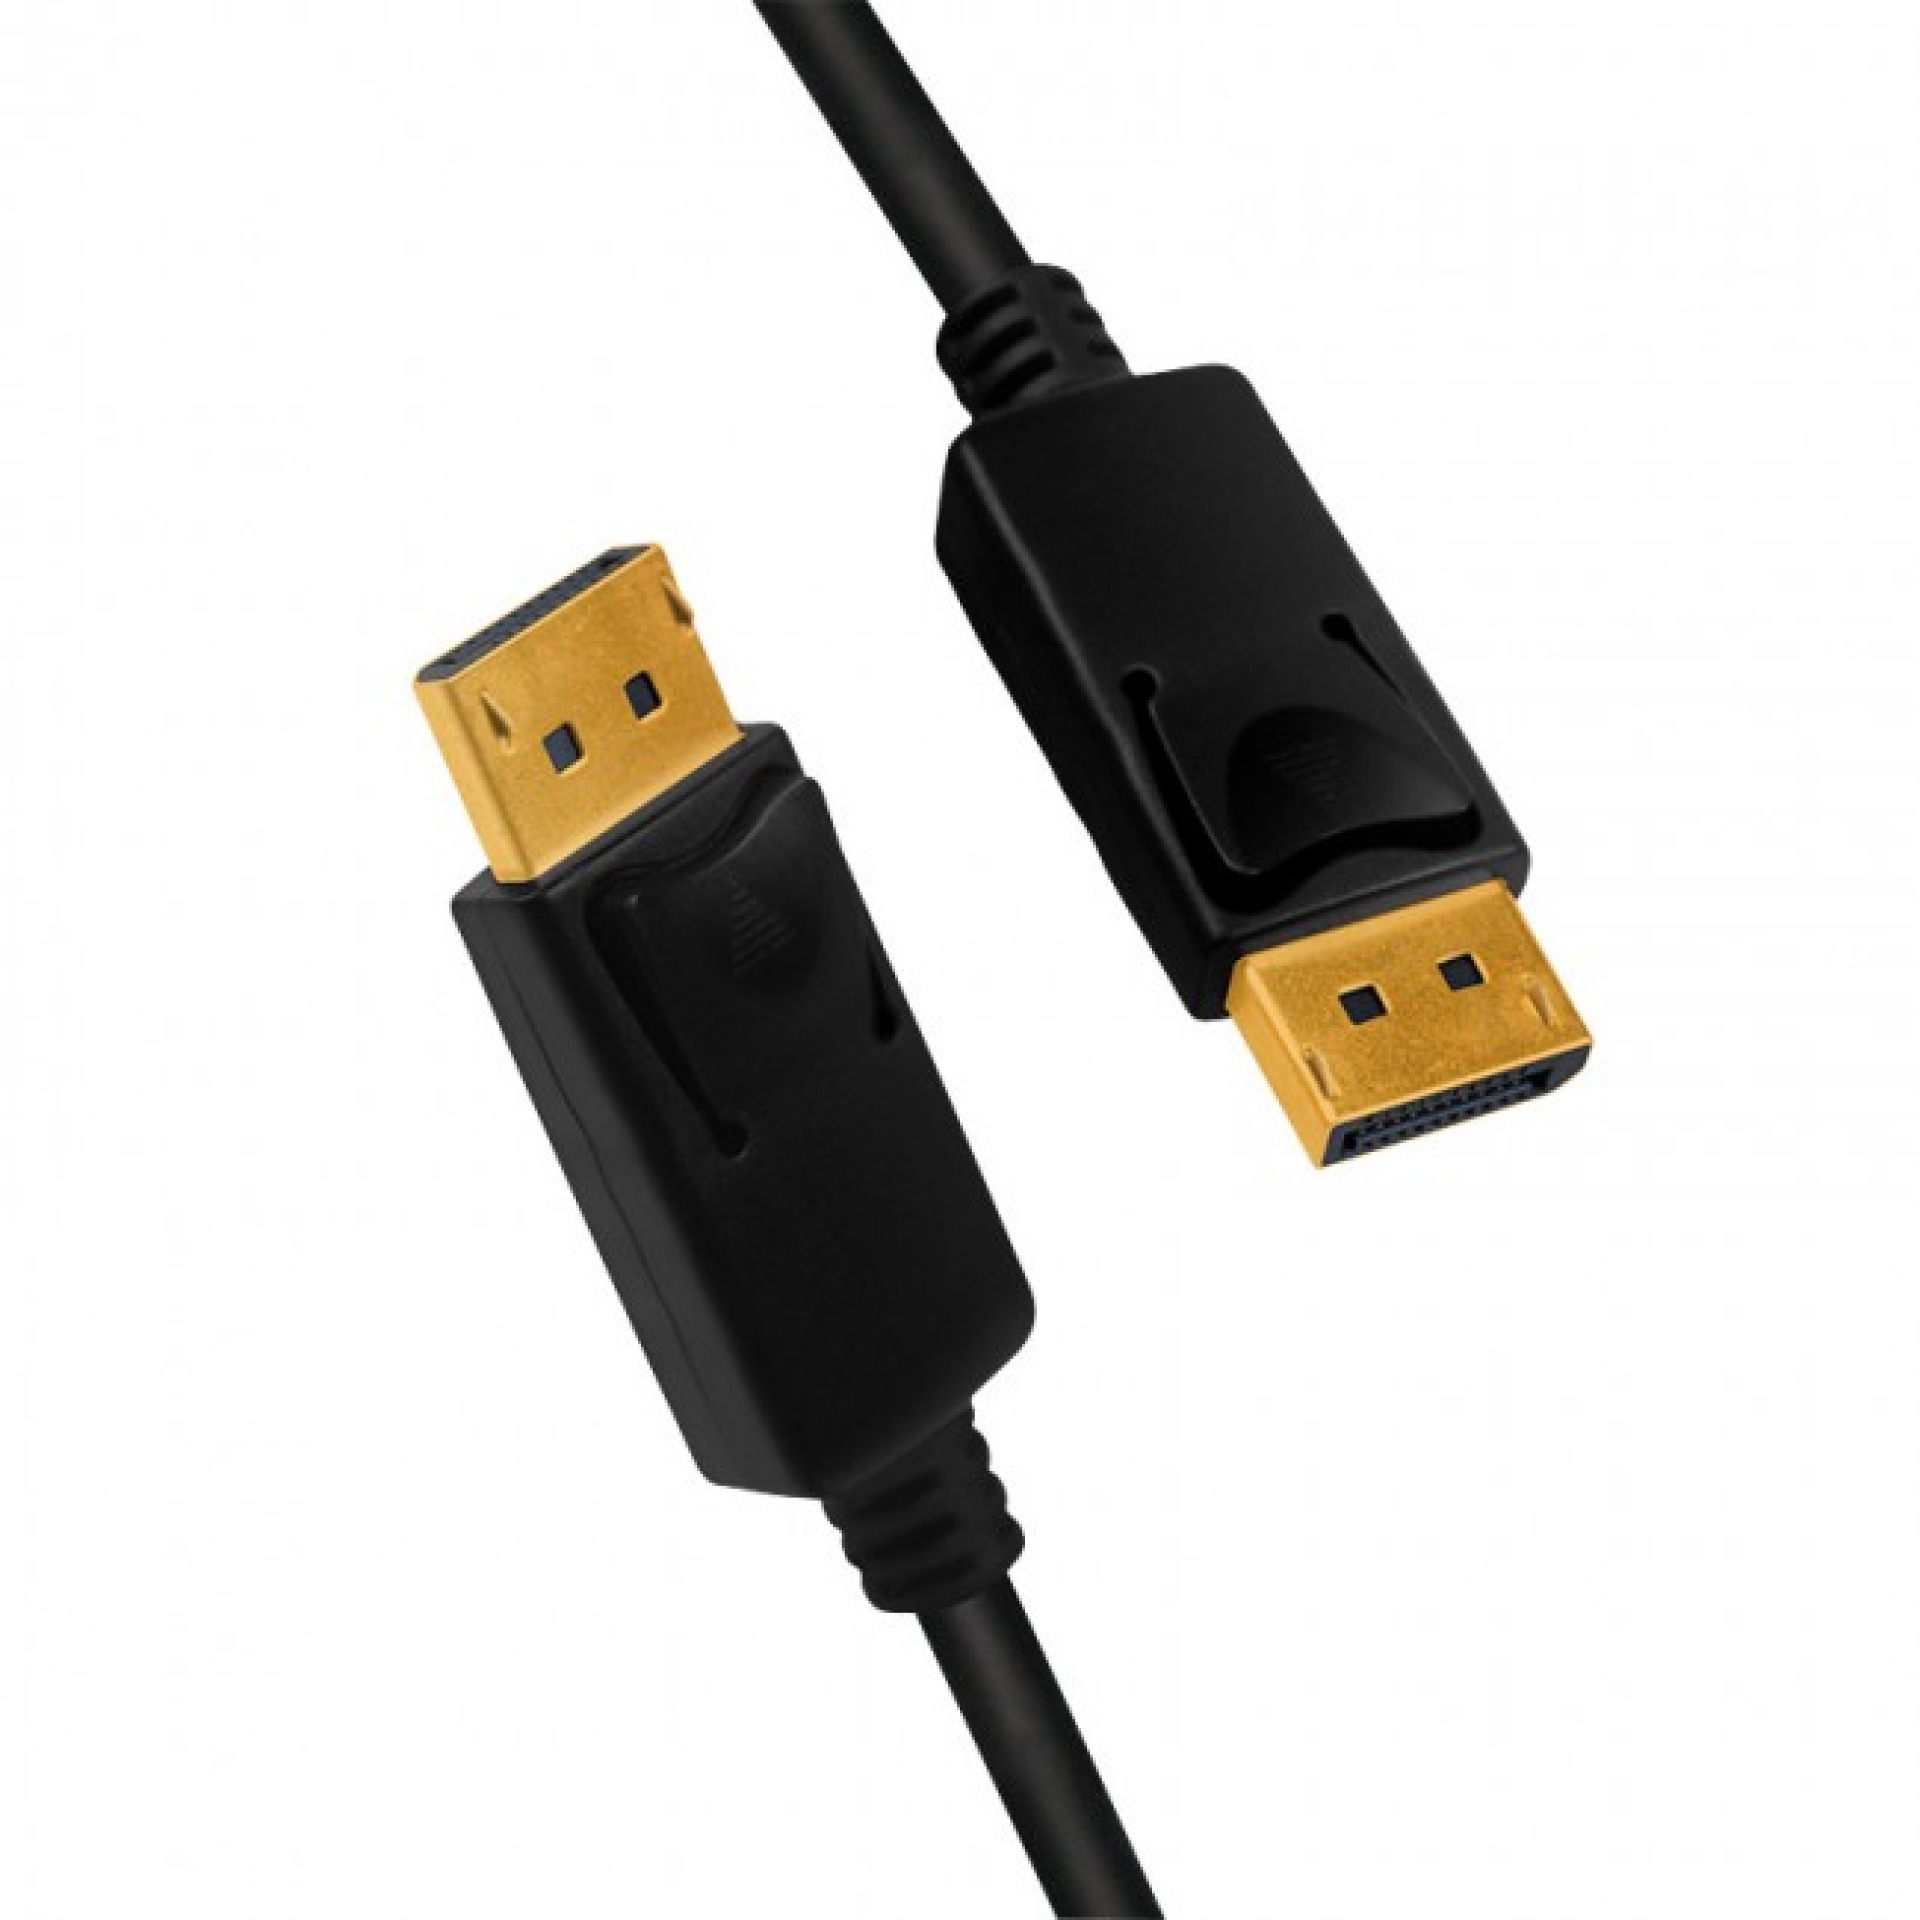 DisplayPort 1.4 Cable, M/M, 2m, black